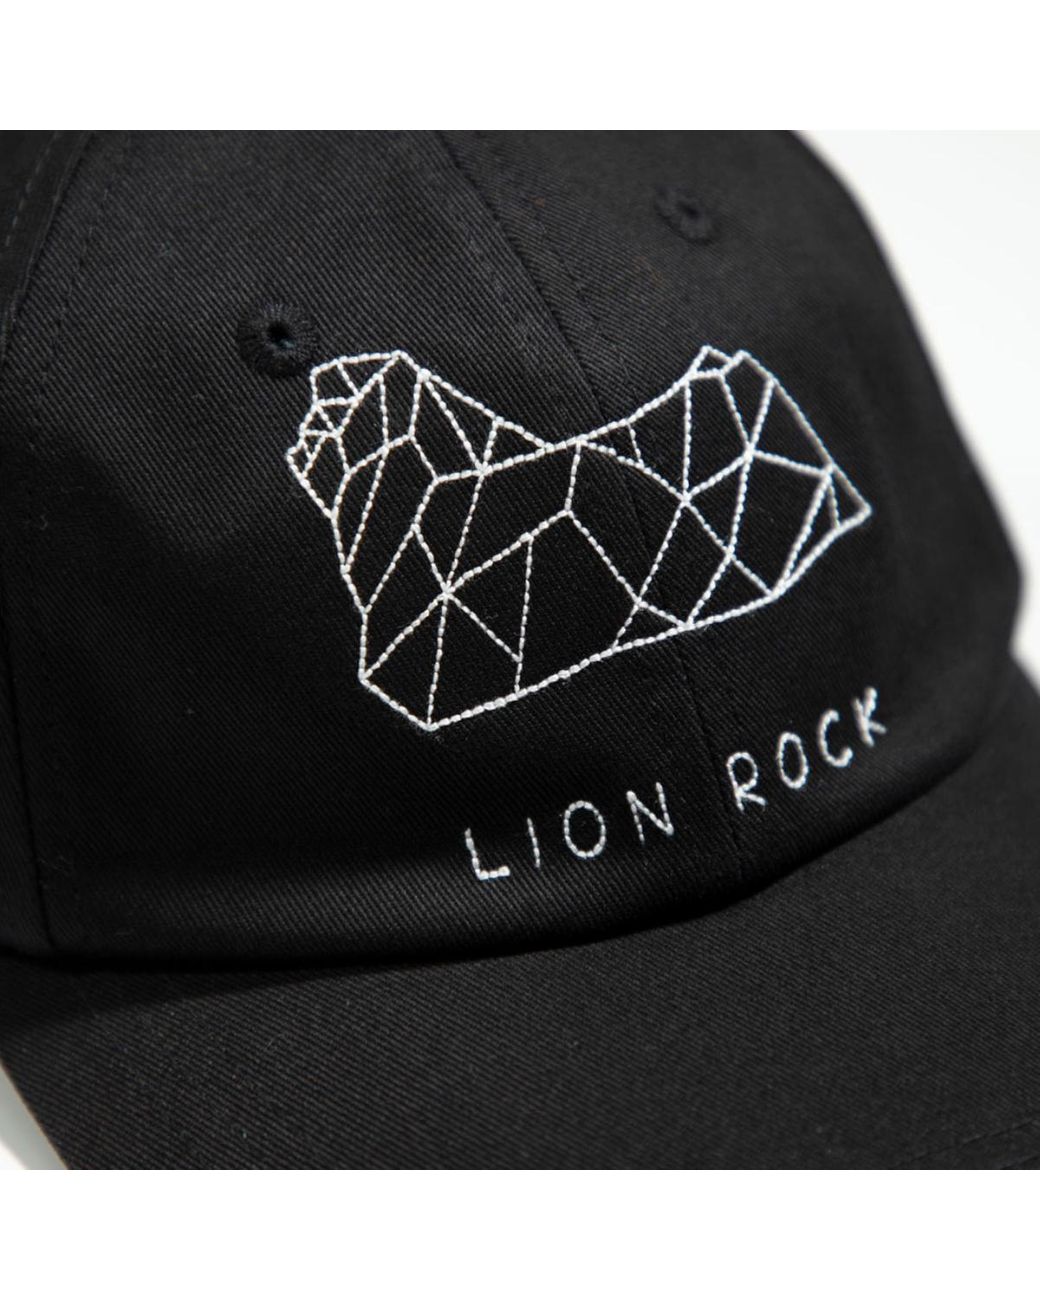 Maison Labiche Kapok Exclusive Collaboration Lion Rock Cap in Black | Lyst